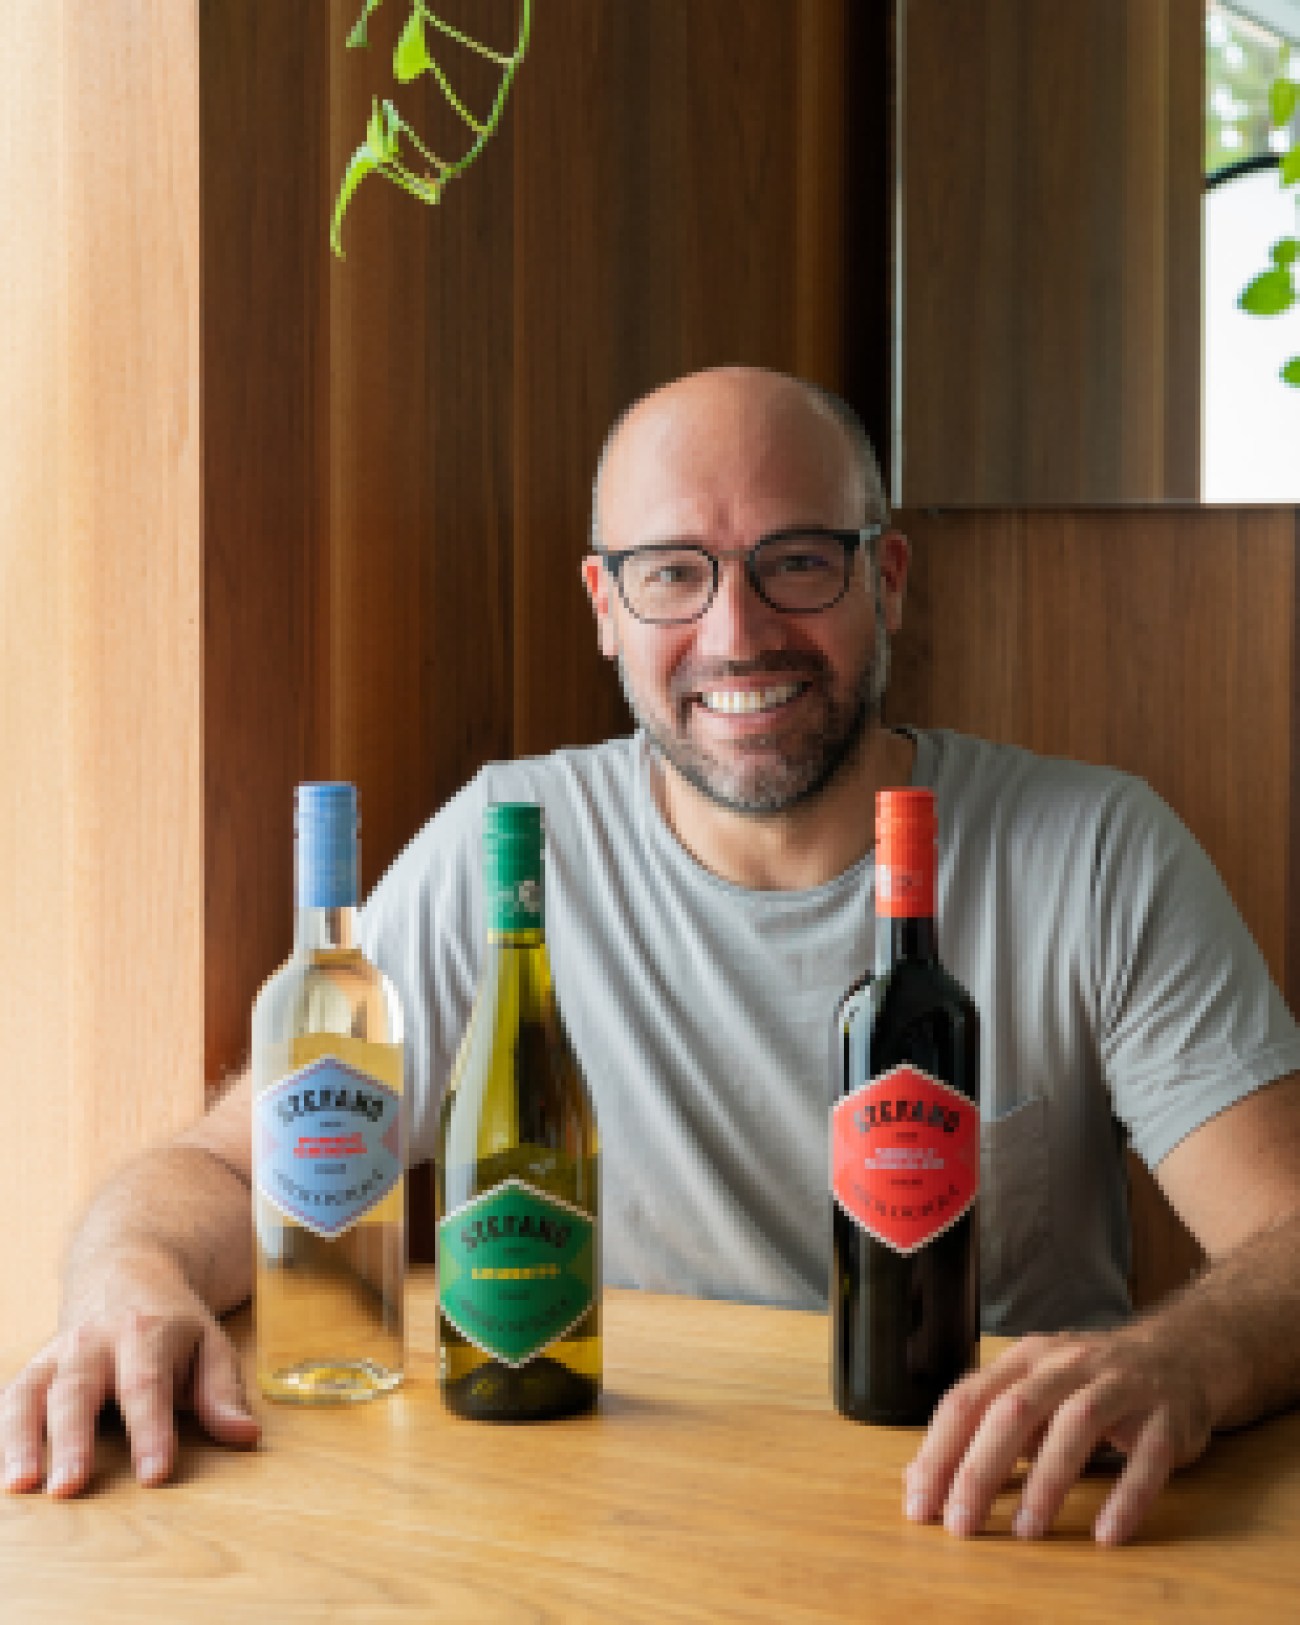 Les trois vins bios de Stefano Faita, maintenant disponibles en épicerie.